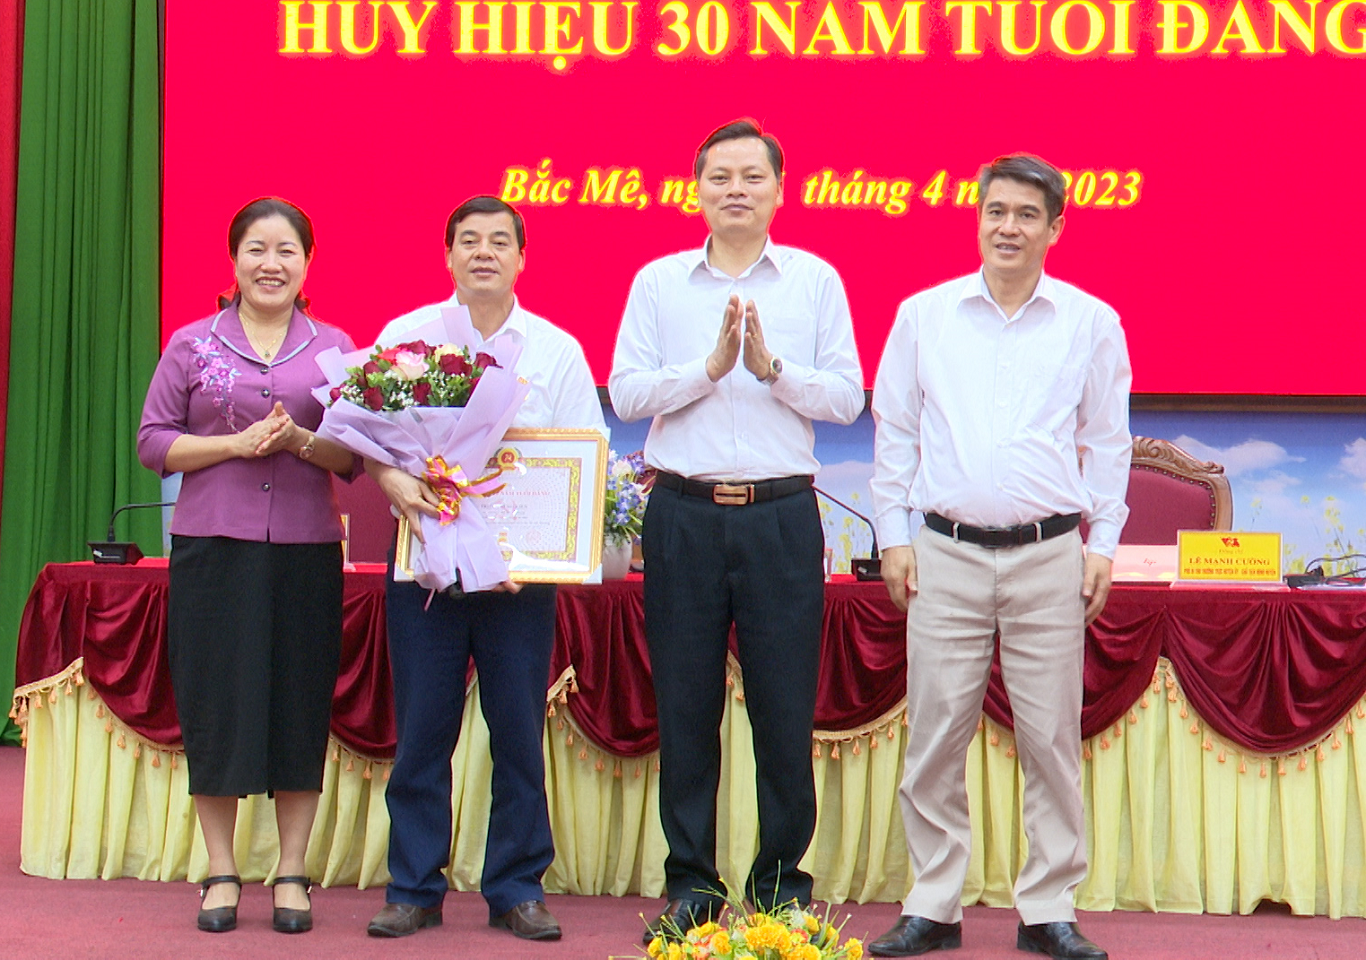 Lễ trao huy hiệu 30 năm tuổi đảng cho đảng viên Triệu Trung Kiên